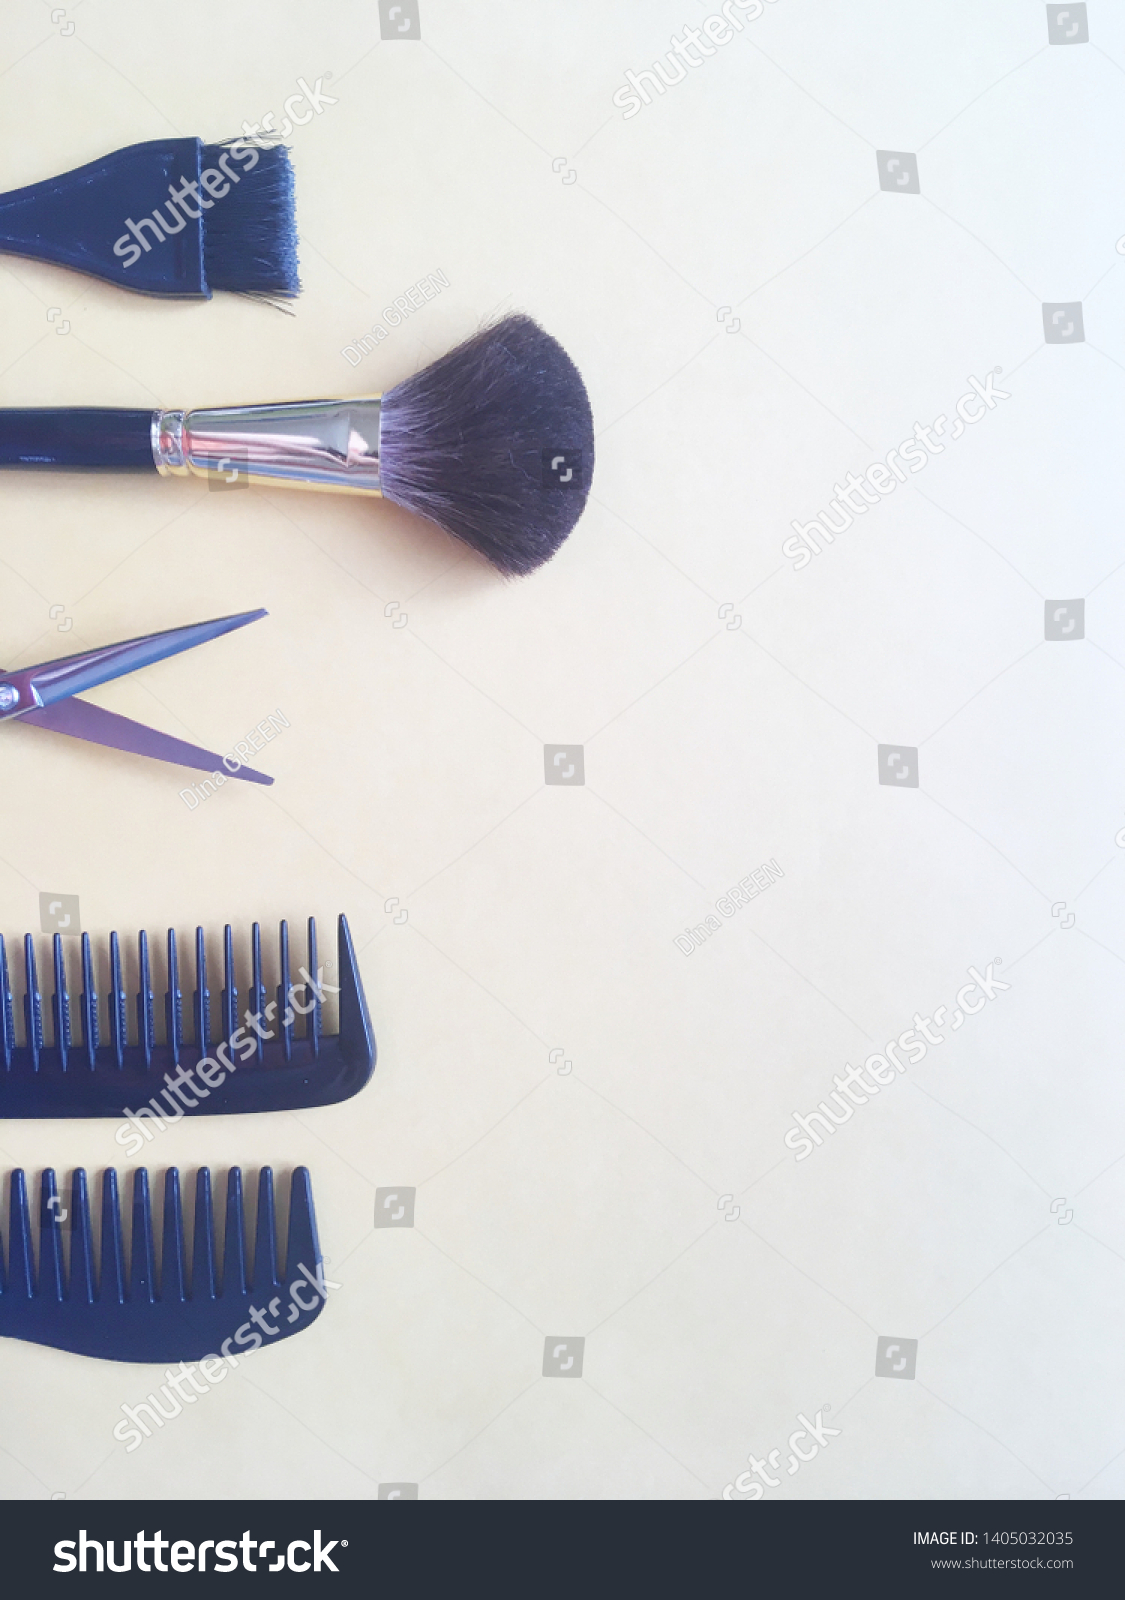 Download Towel Scissors Comb Tools Barber Hairdresser Stock Photo Edit Now 1405032035